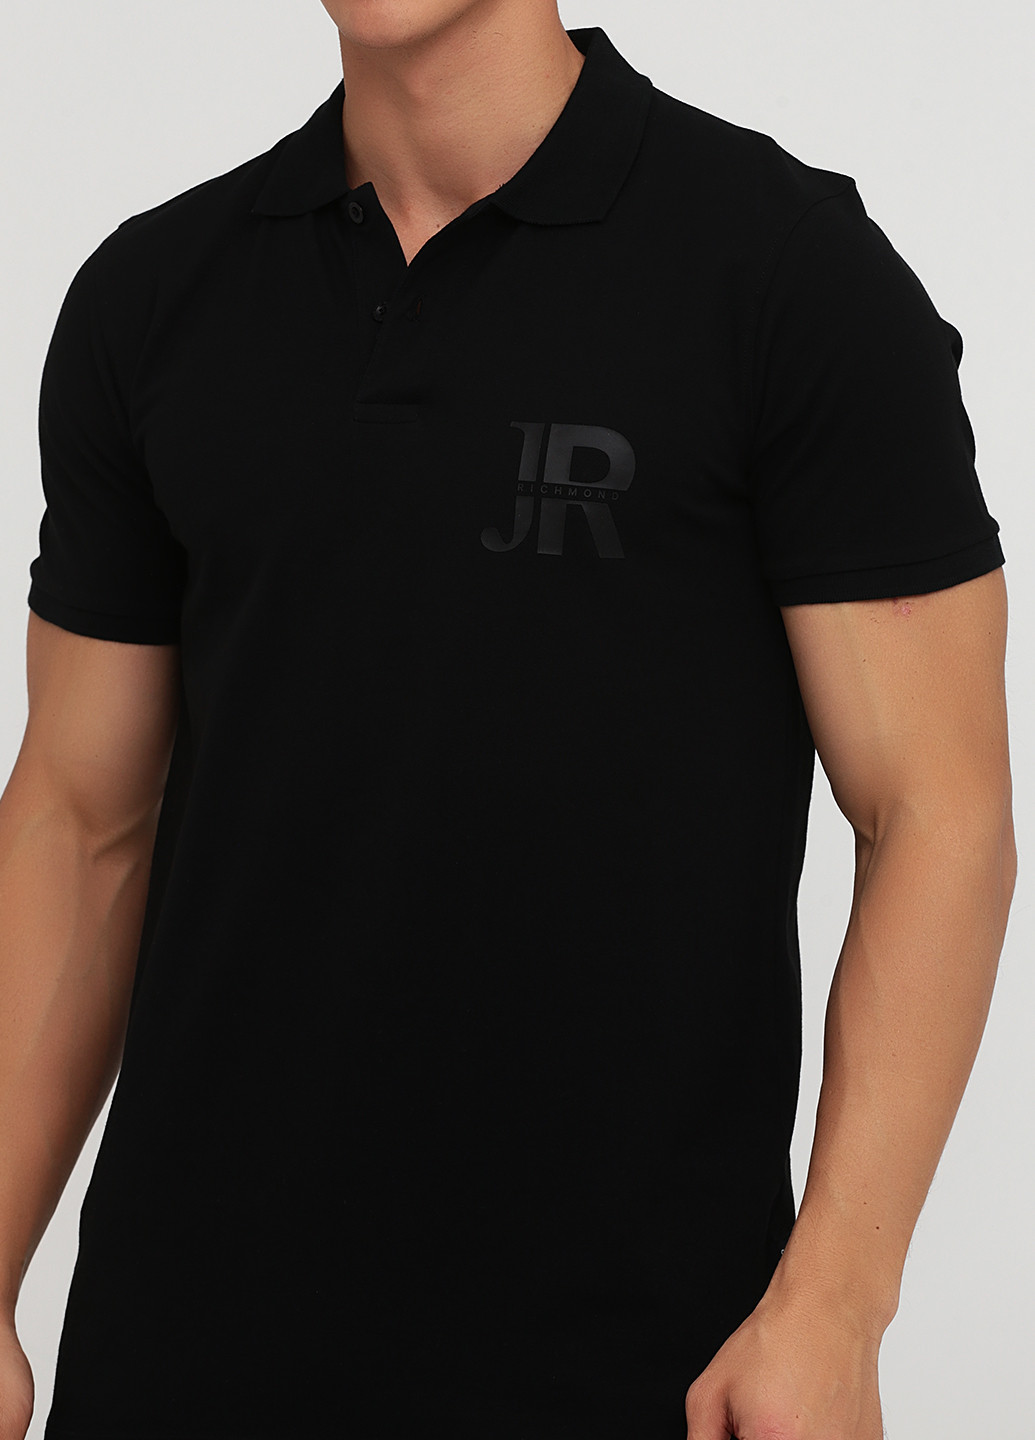 Черная футболка-поло для мужчин John Richmond однотонная